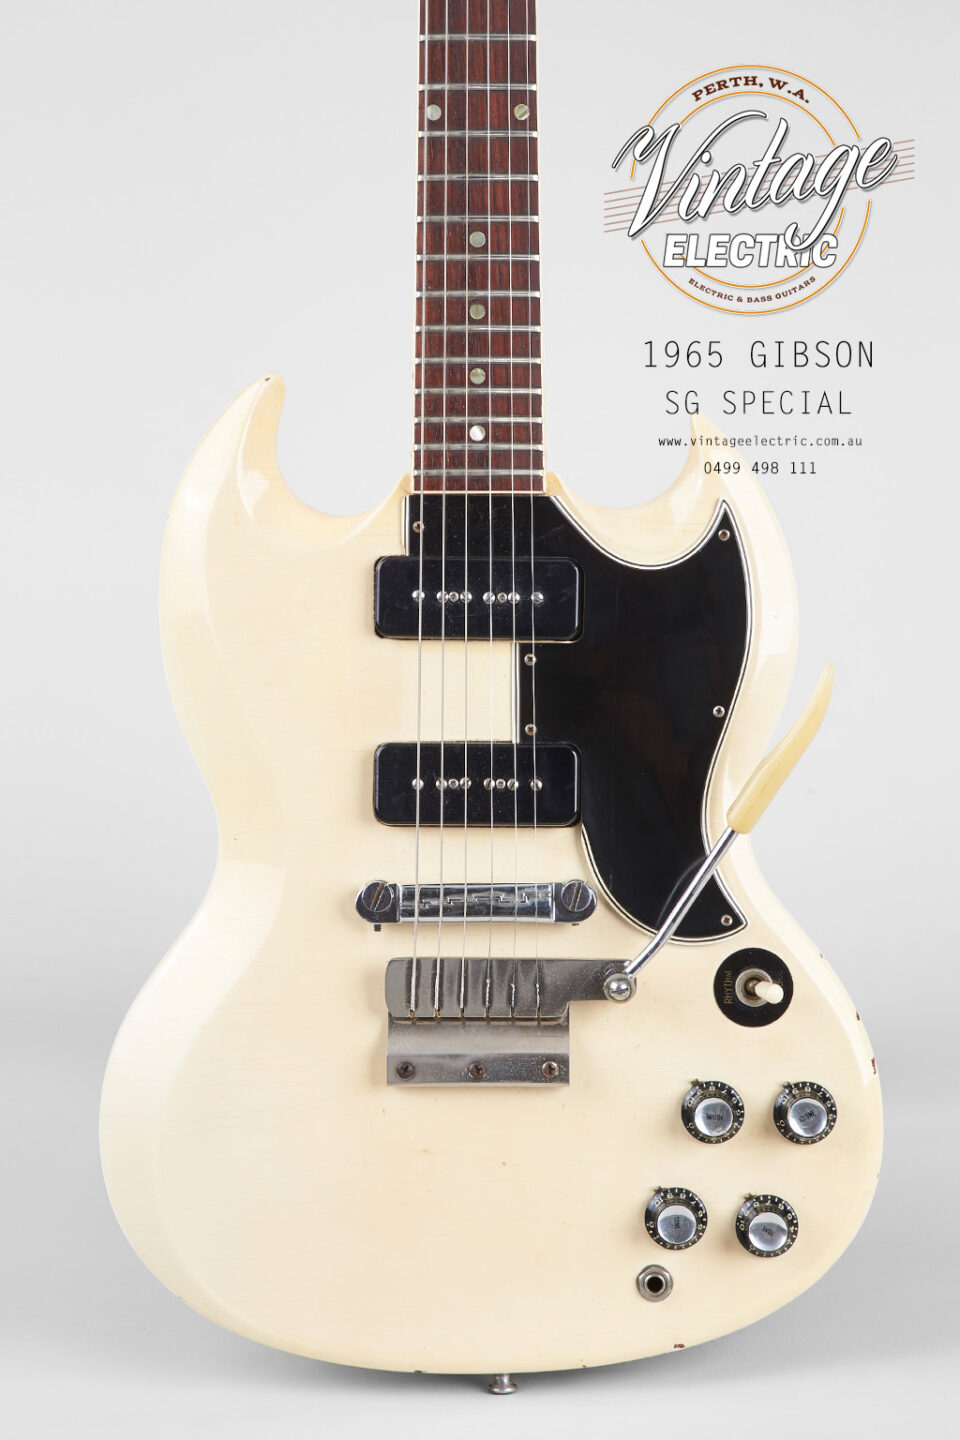 1965 Gibson SG Special Body